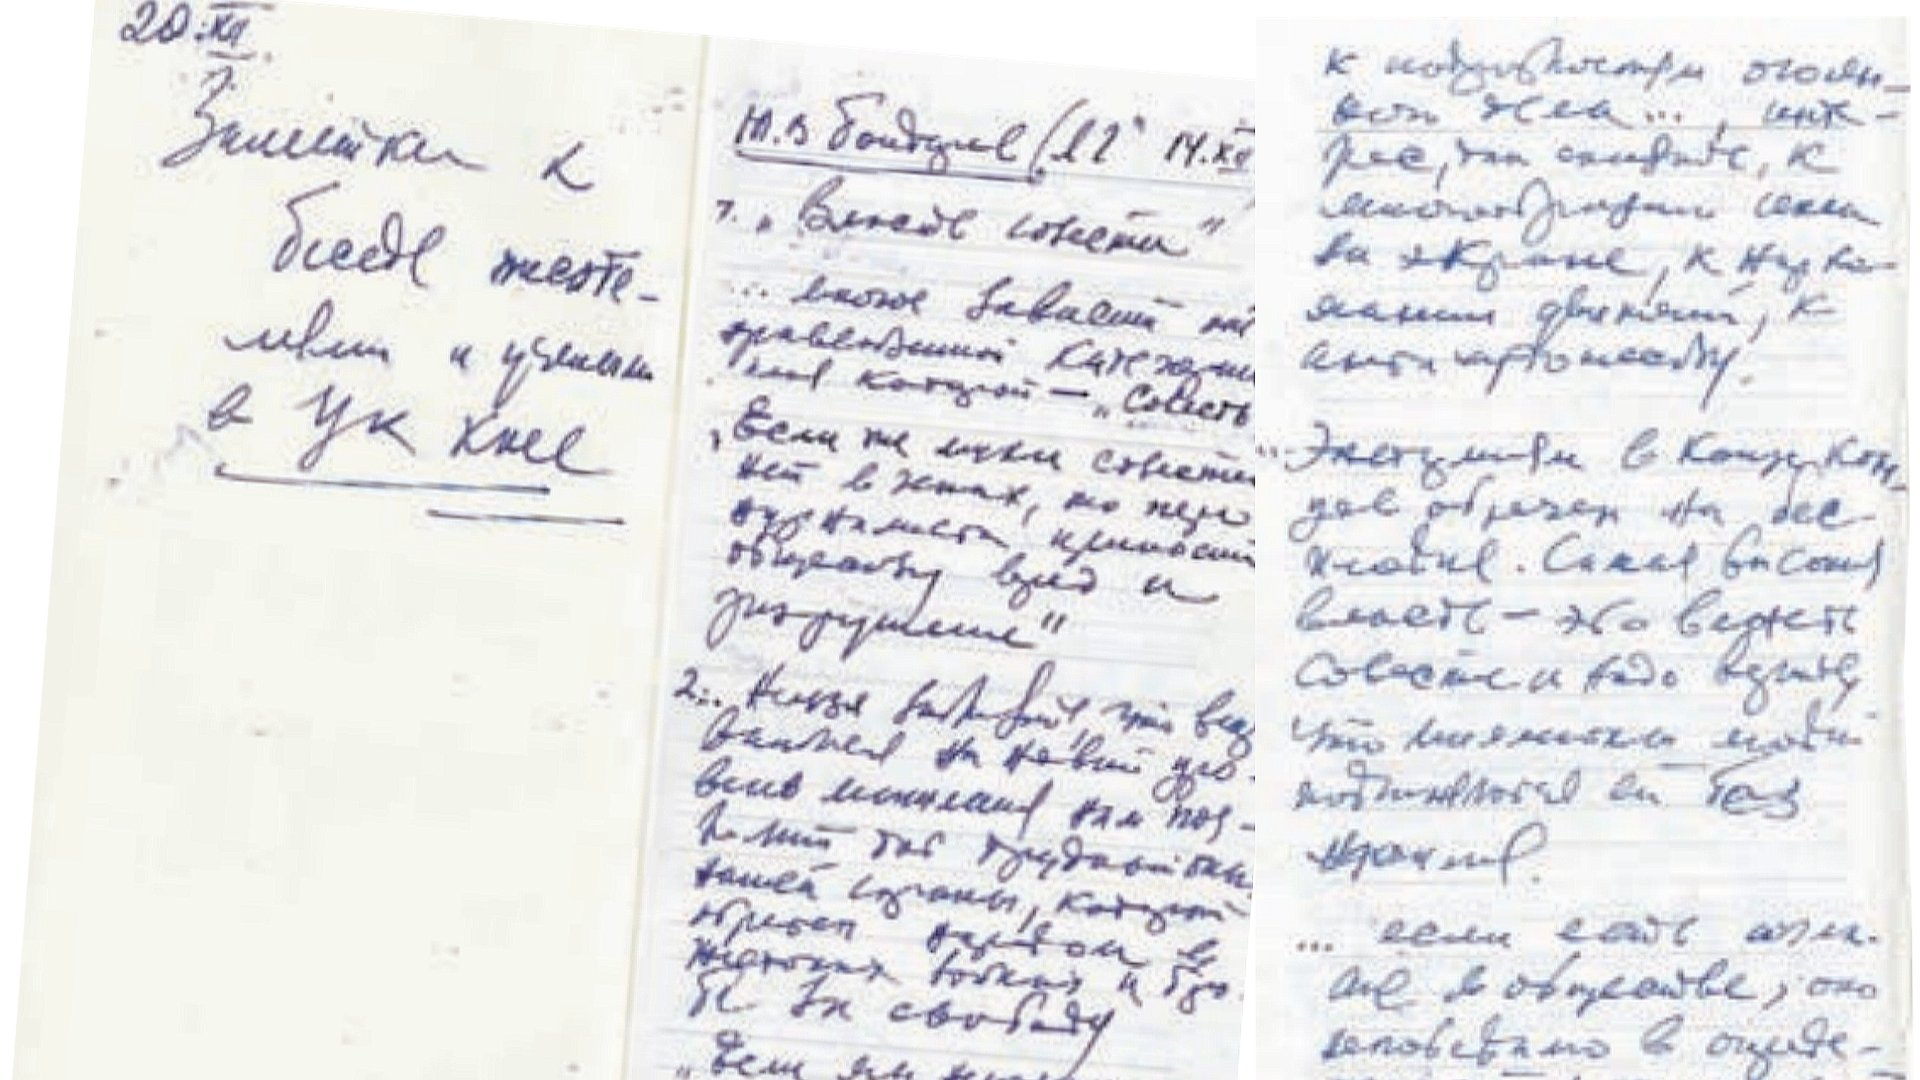 Записи в блокноте Горбачева — он готовился к встрече с писателями и учеными в ЦК. Из архива Горбачев-фонда